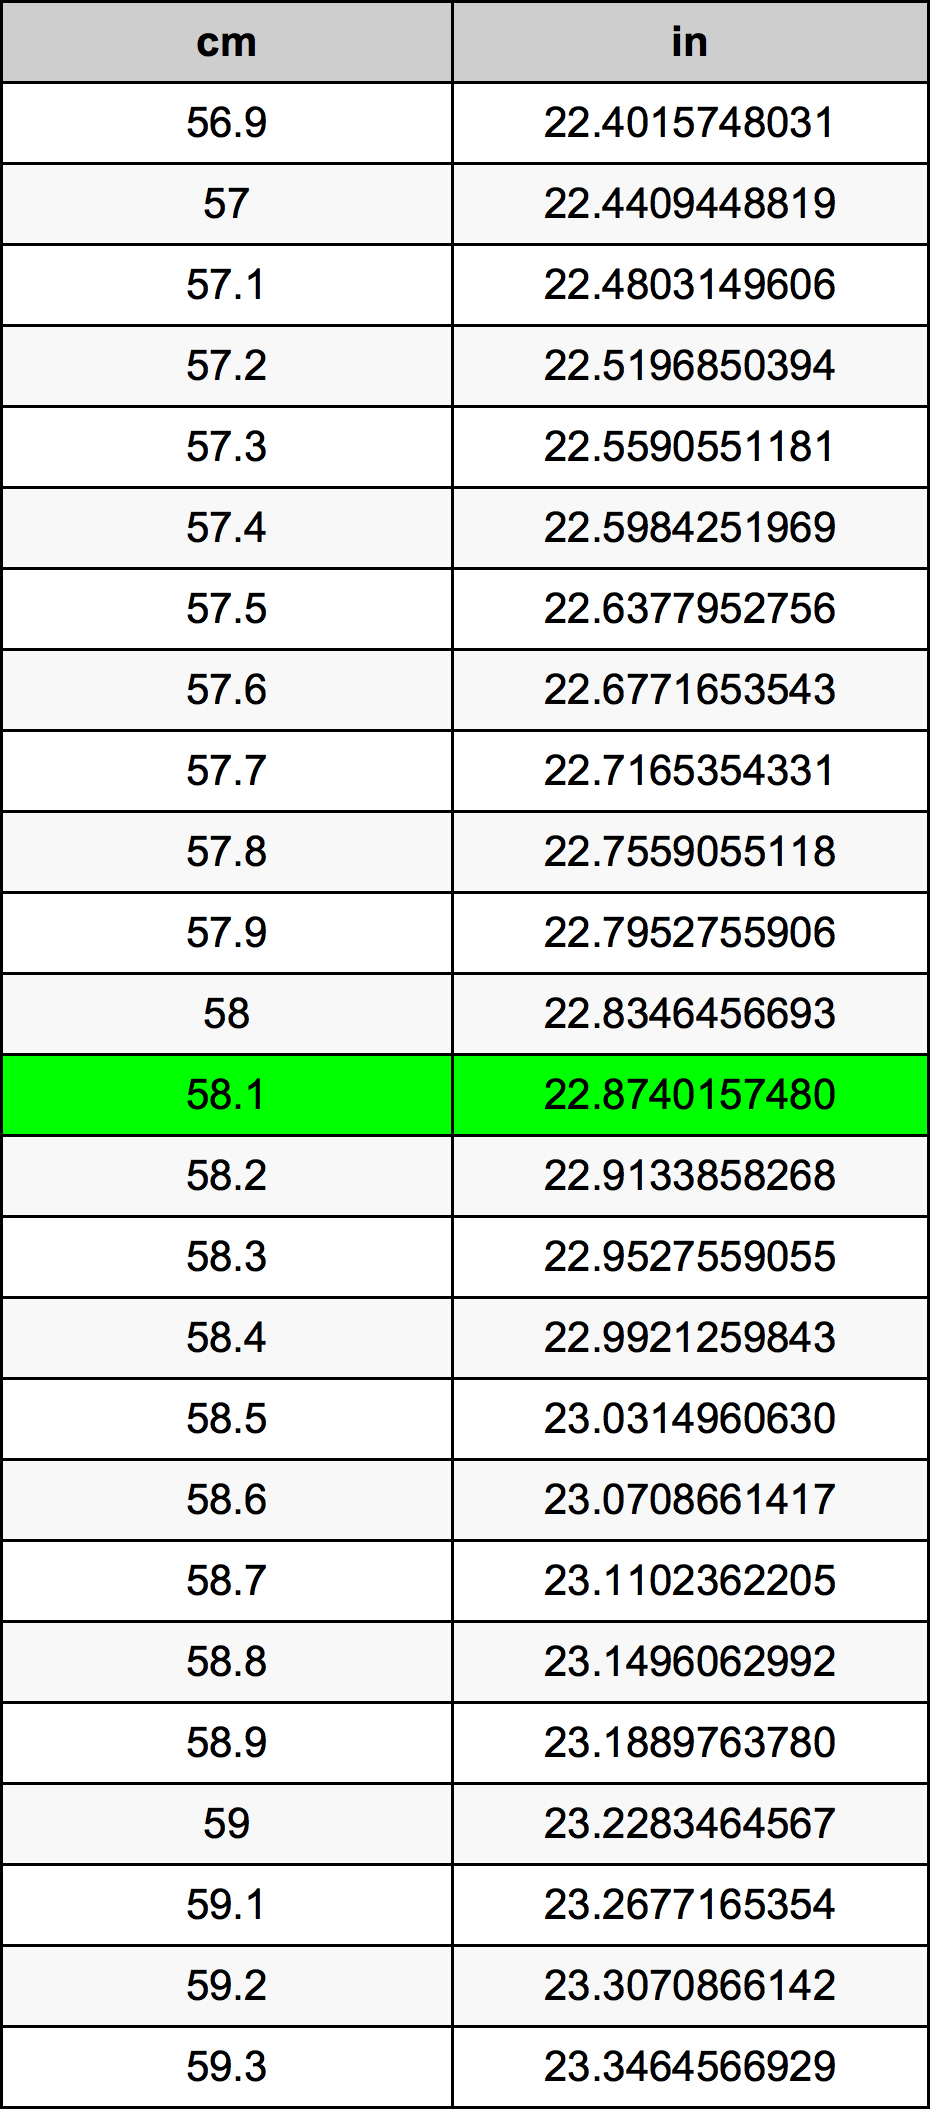 58.1 Centiméter átszámítási táblázat